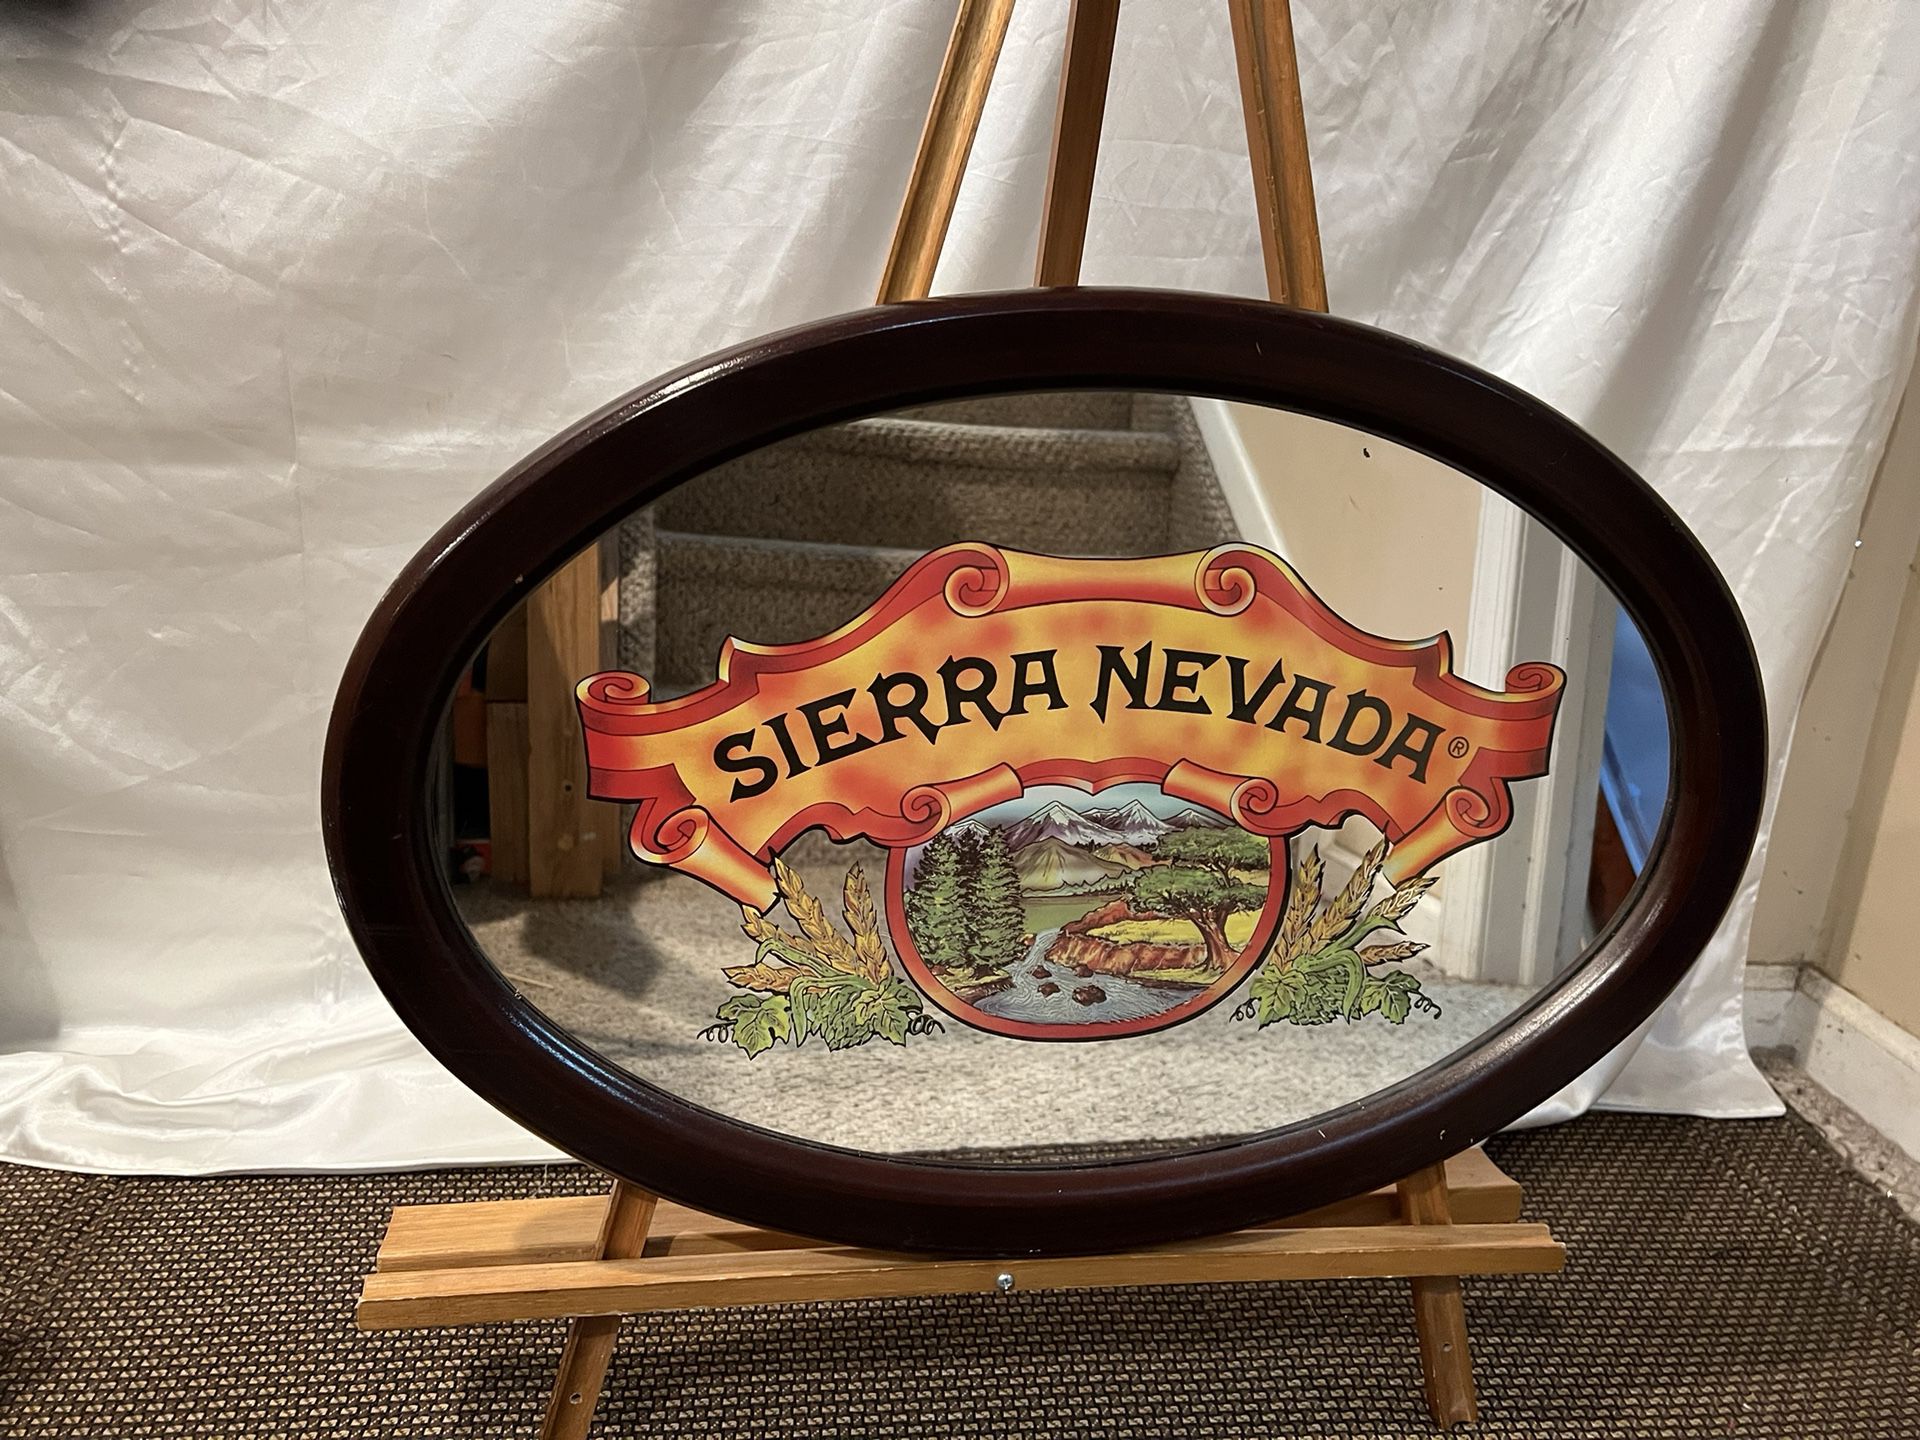 16”x24” vintage Sierra Nevada beer bar mirror 